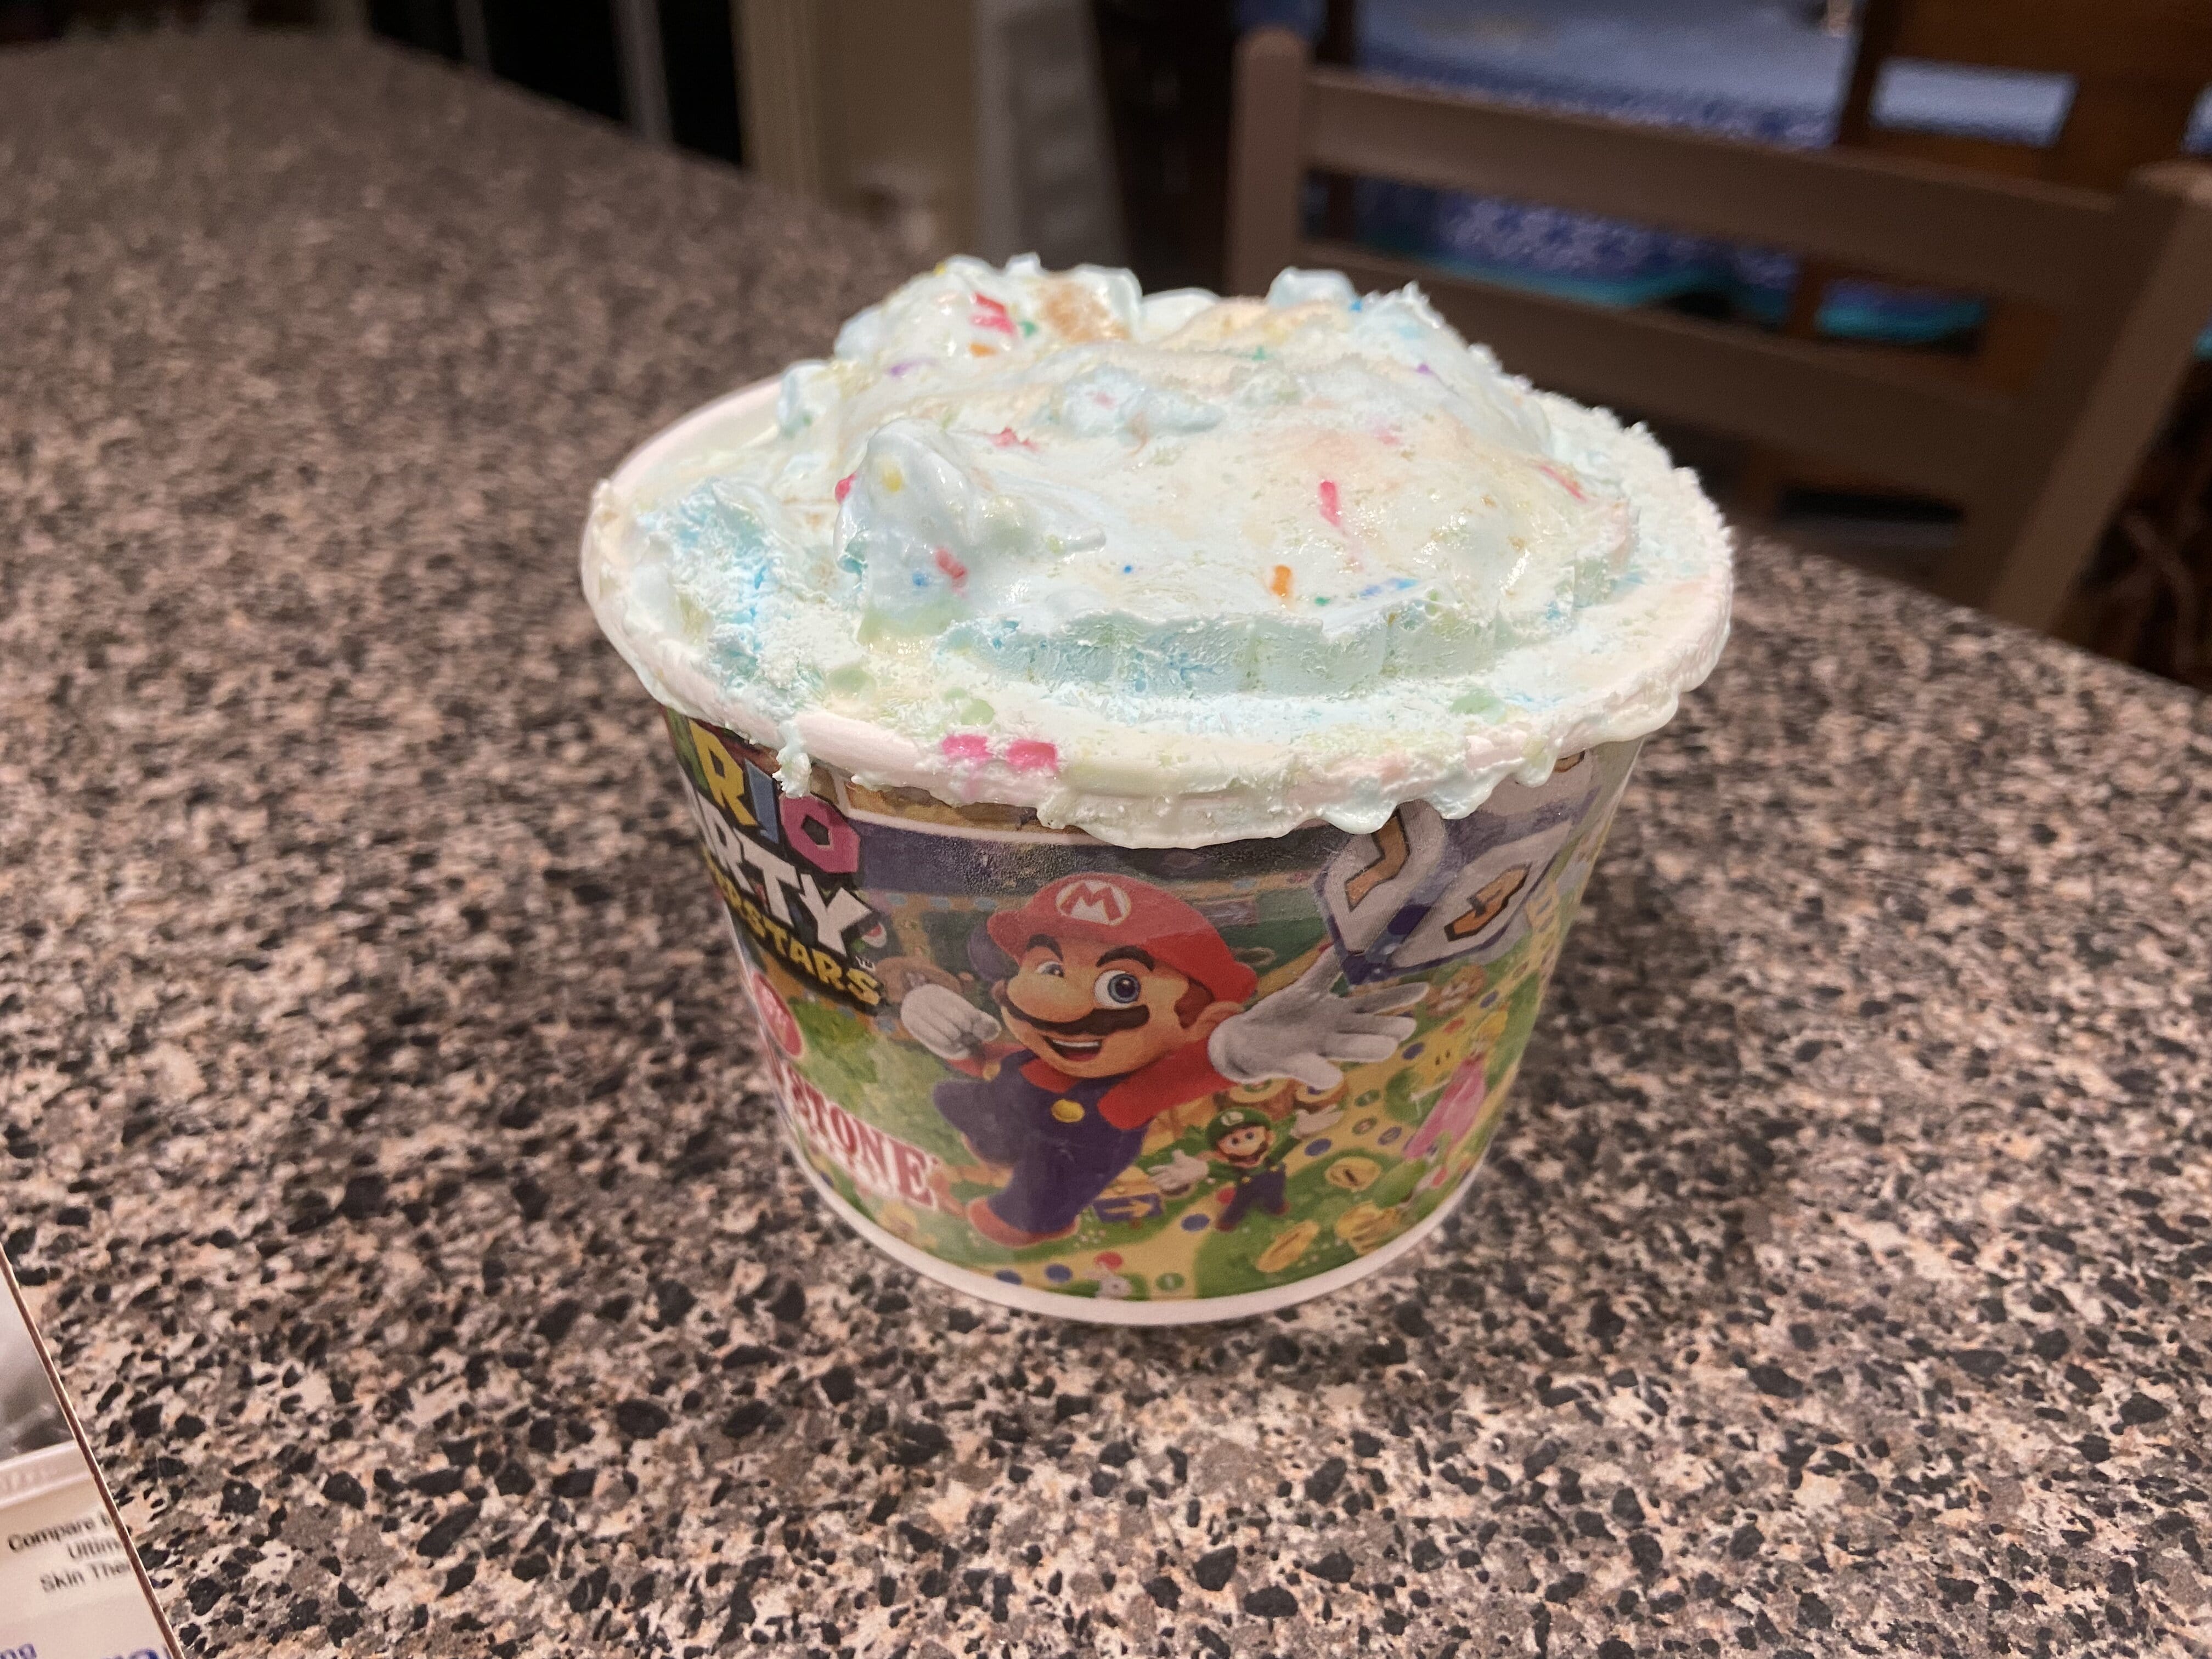 El helado Mario de Cold Stone se encuentra en un recipiente.